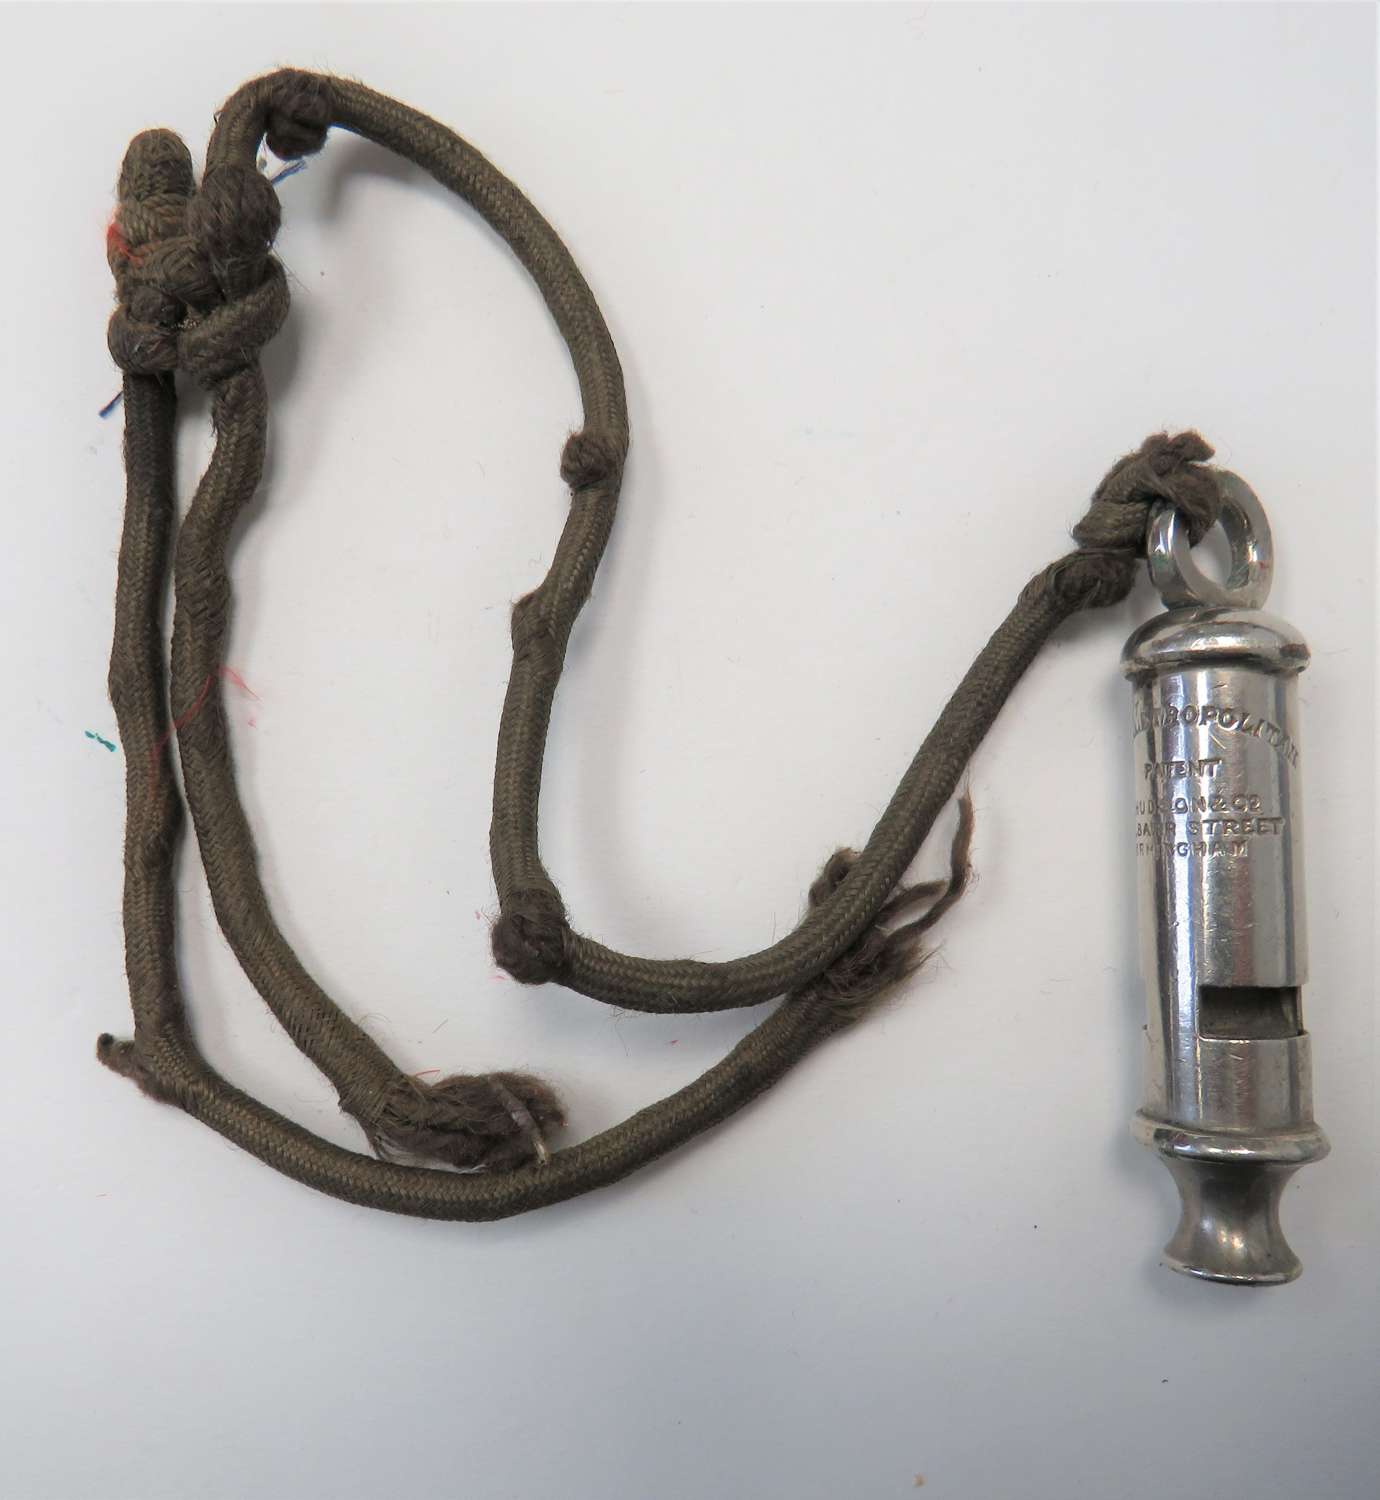 Metropolitan Patent Whistle and Lanyard